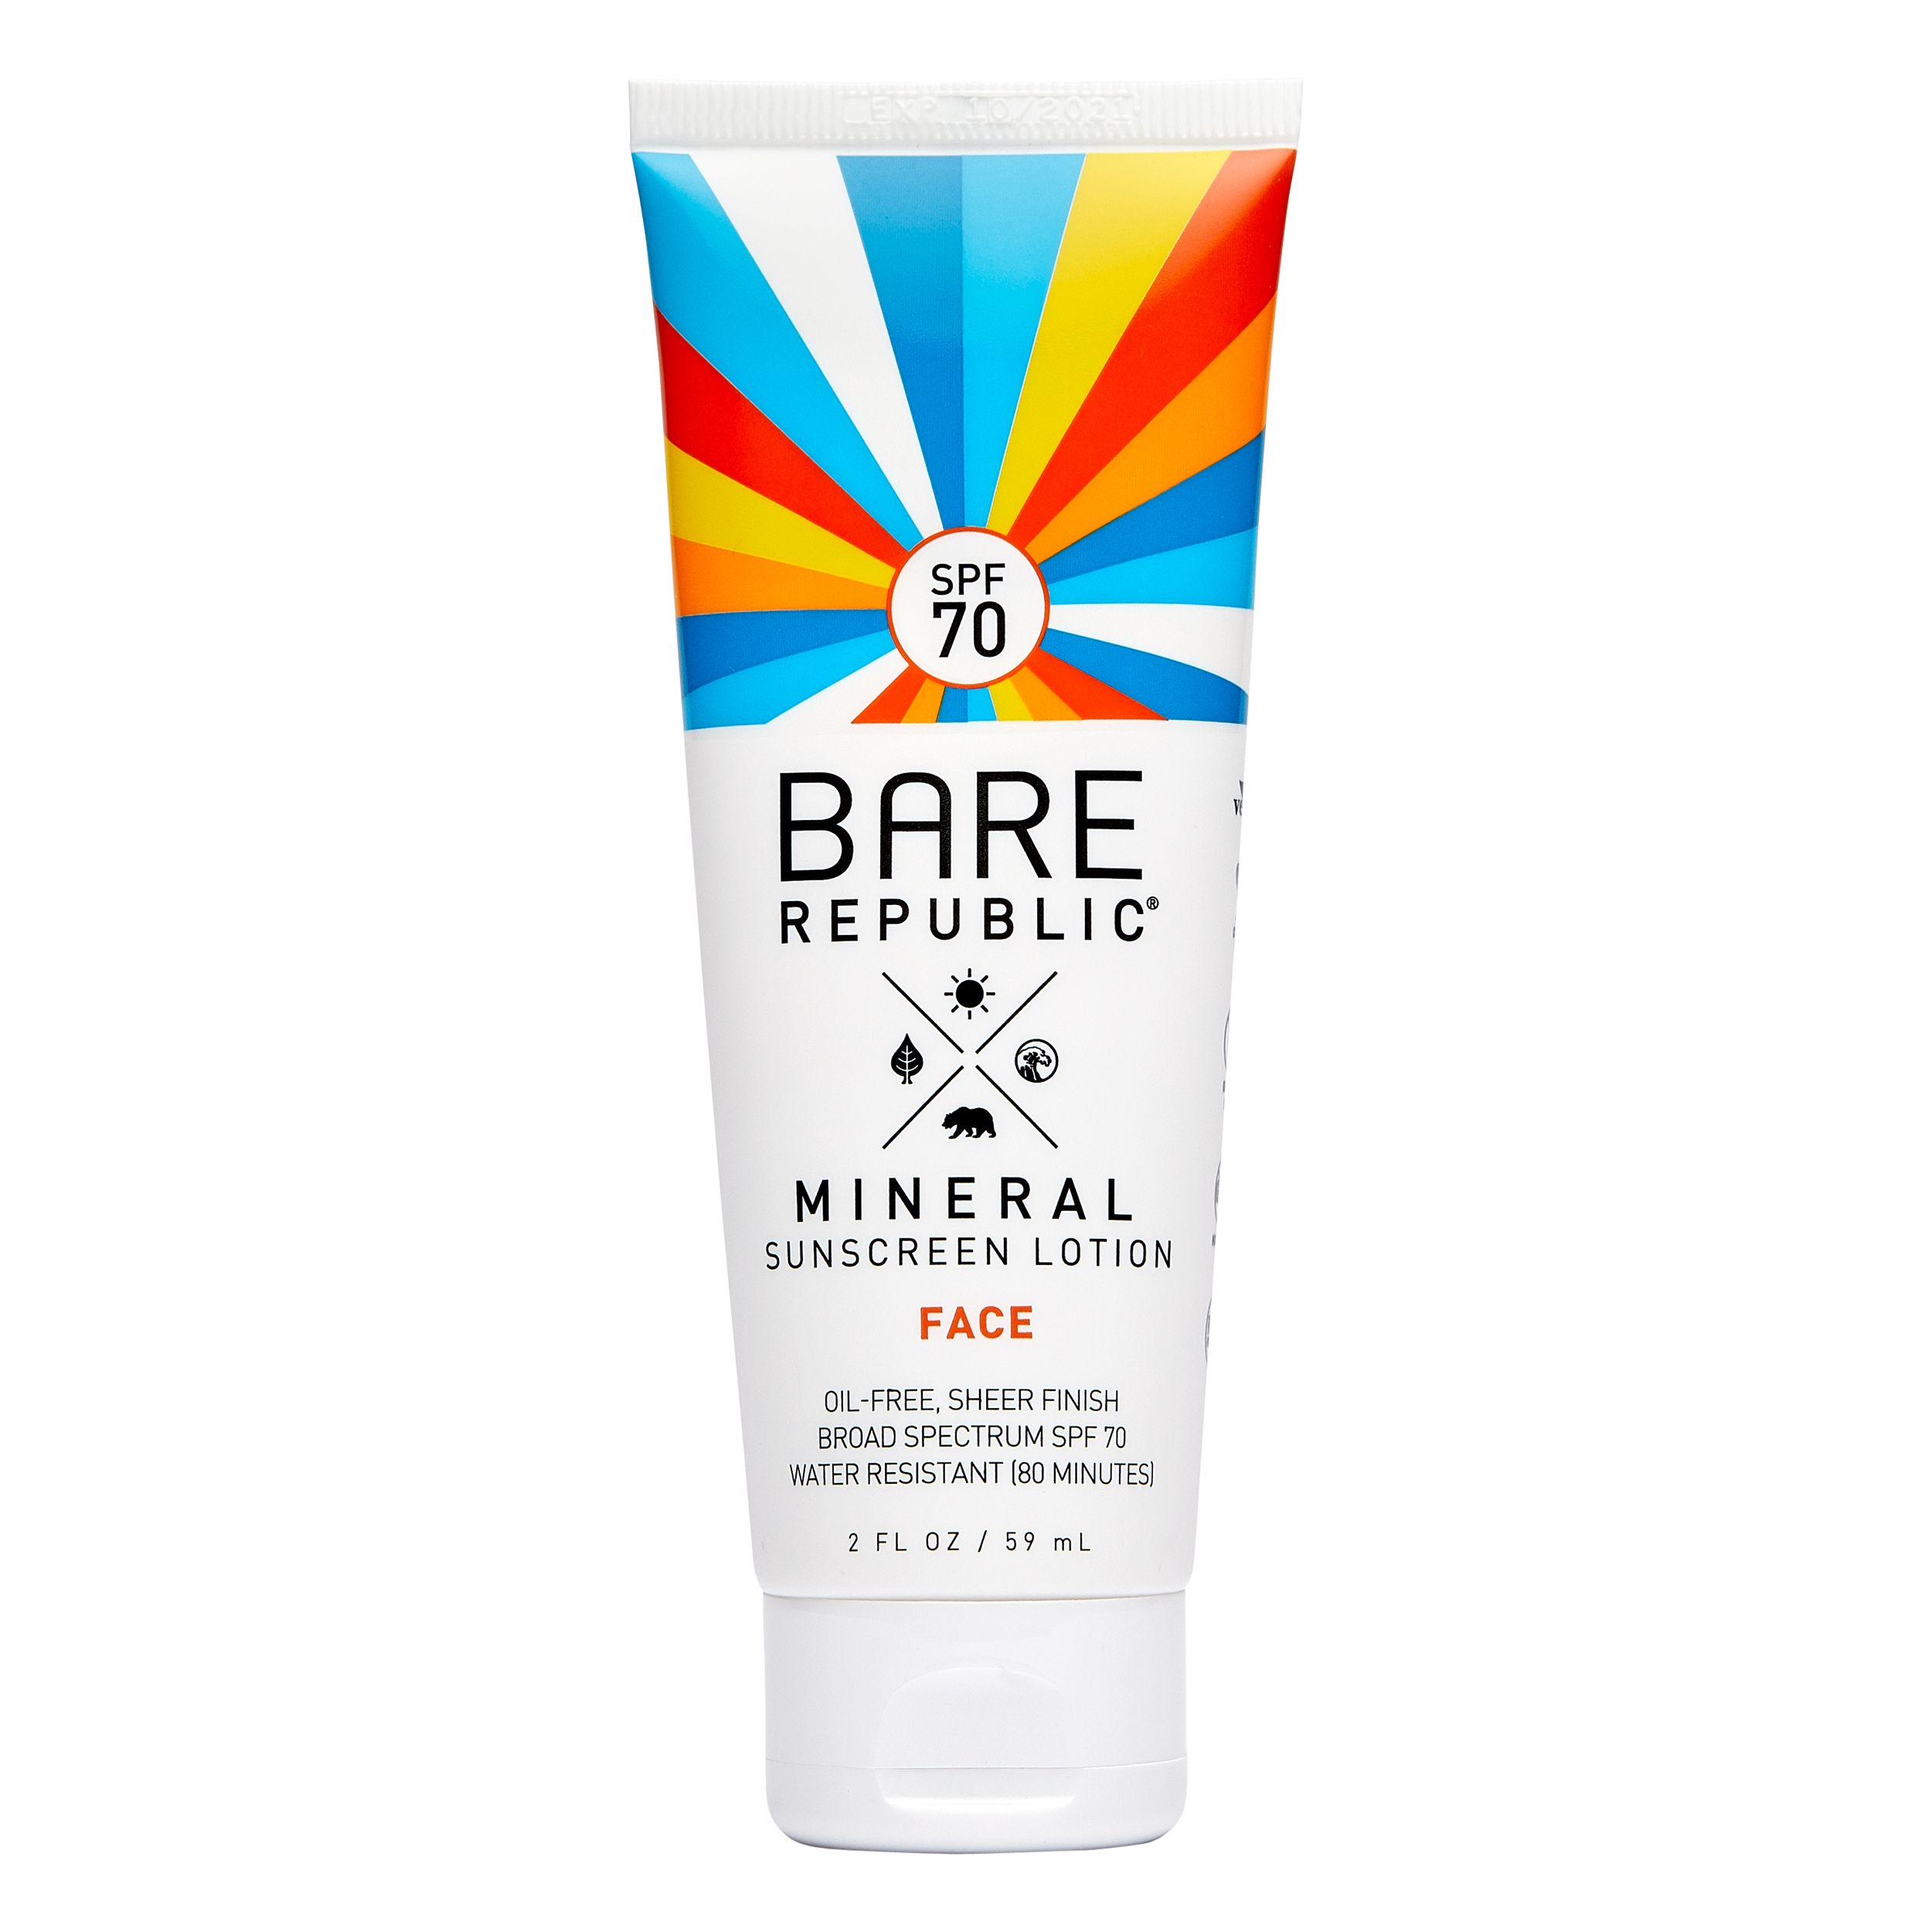 Bare Republic Mineral Face Sunscreen Lotion, SPF 70 - 2 fl oz